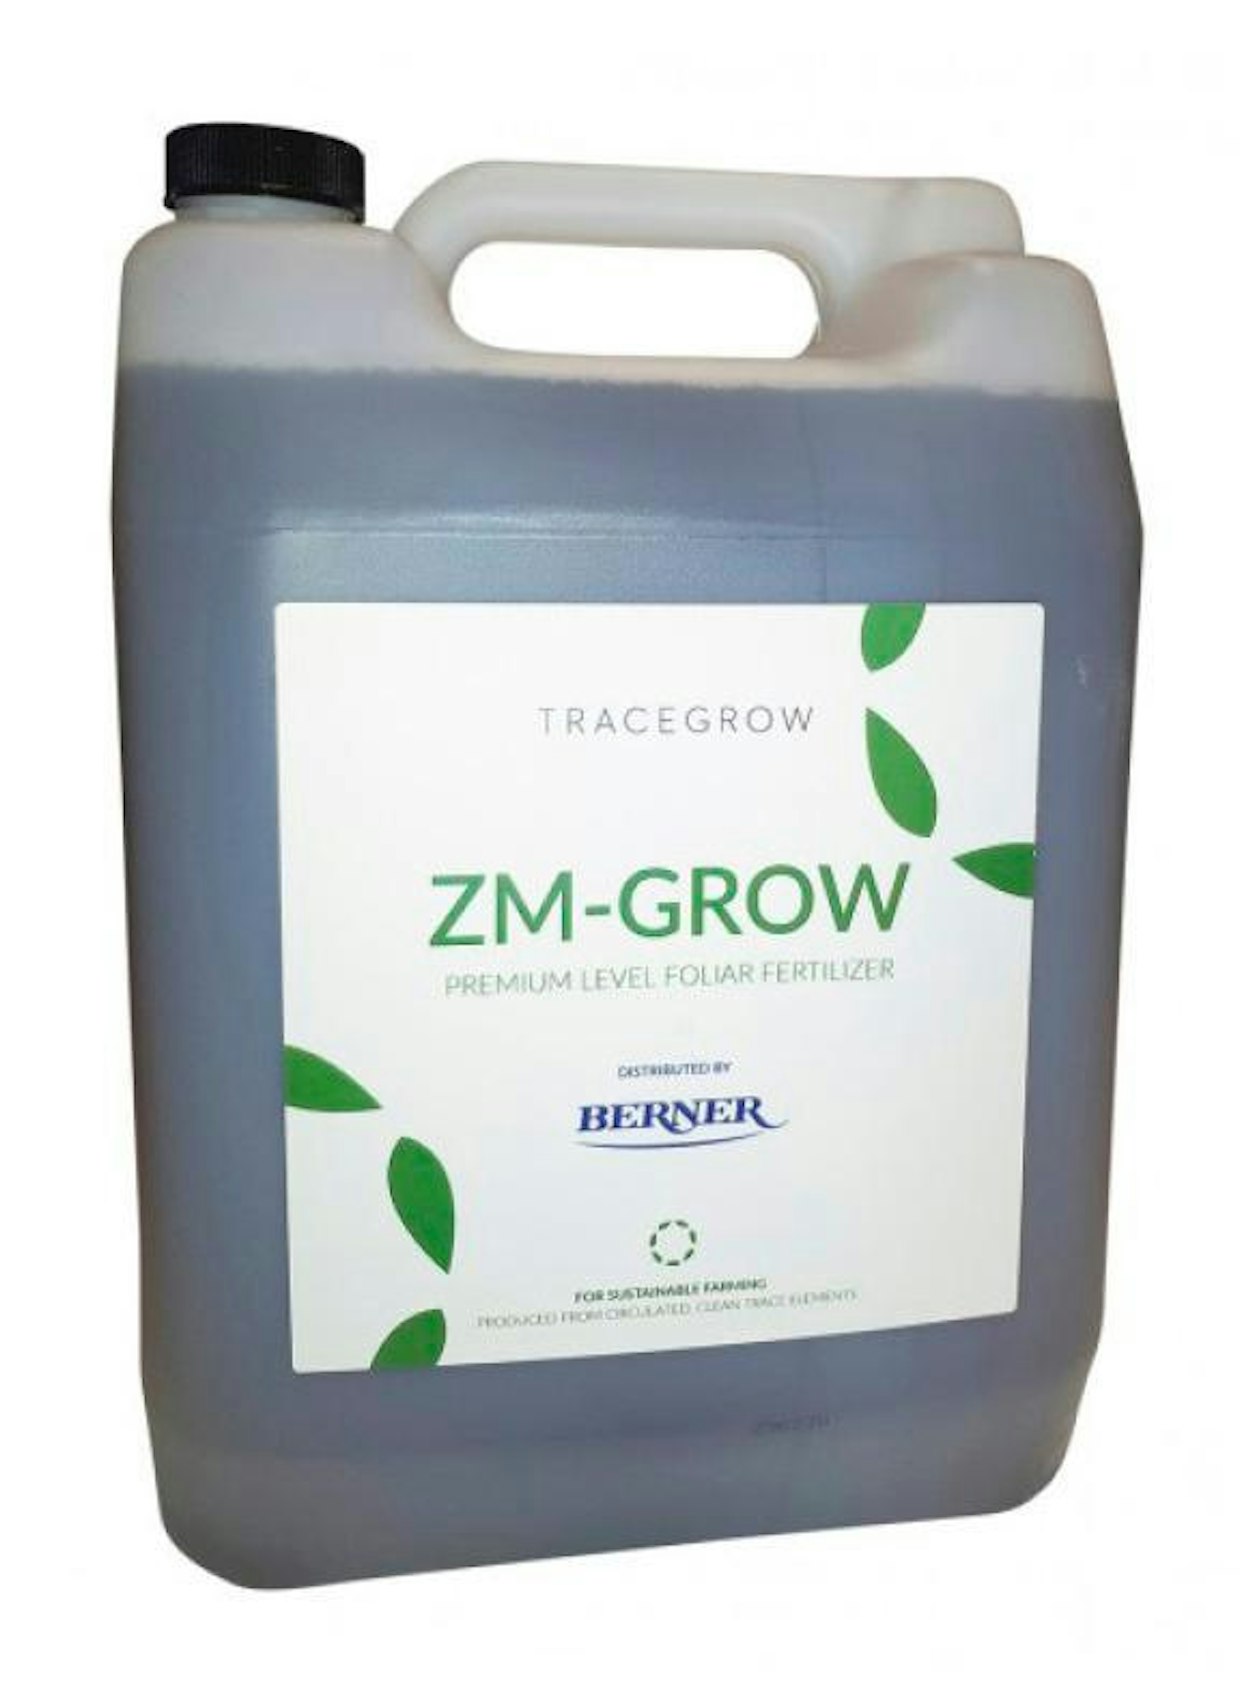 Kiertotalouden innovaatioihin erikoistunut Tracegrow Oy on kehittänyt uuden innovaation, jossa saadaan kemiallisen prosessin jälkeen valmistettua alkaliparistoista mangaani- ja sinkkipitoista hivenaineliuosta maatalouden tarpeisiin.